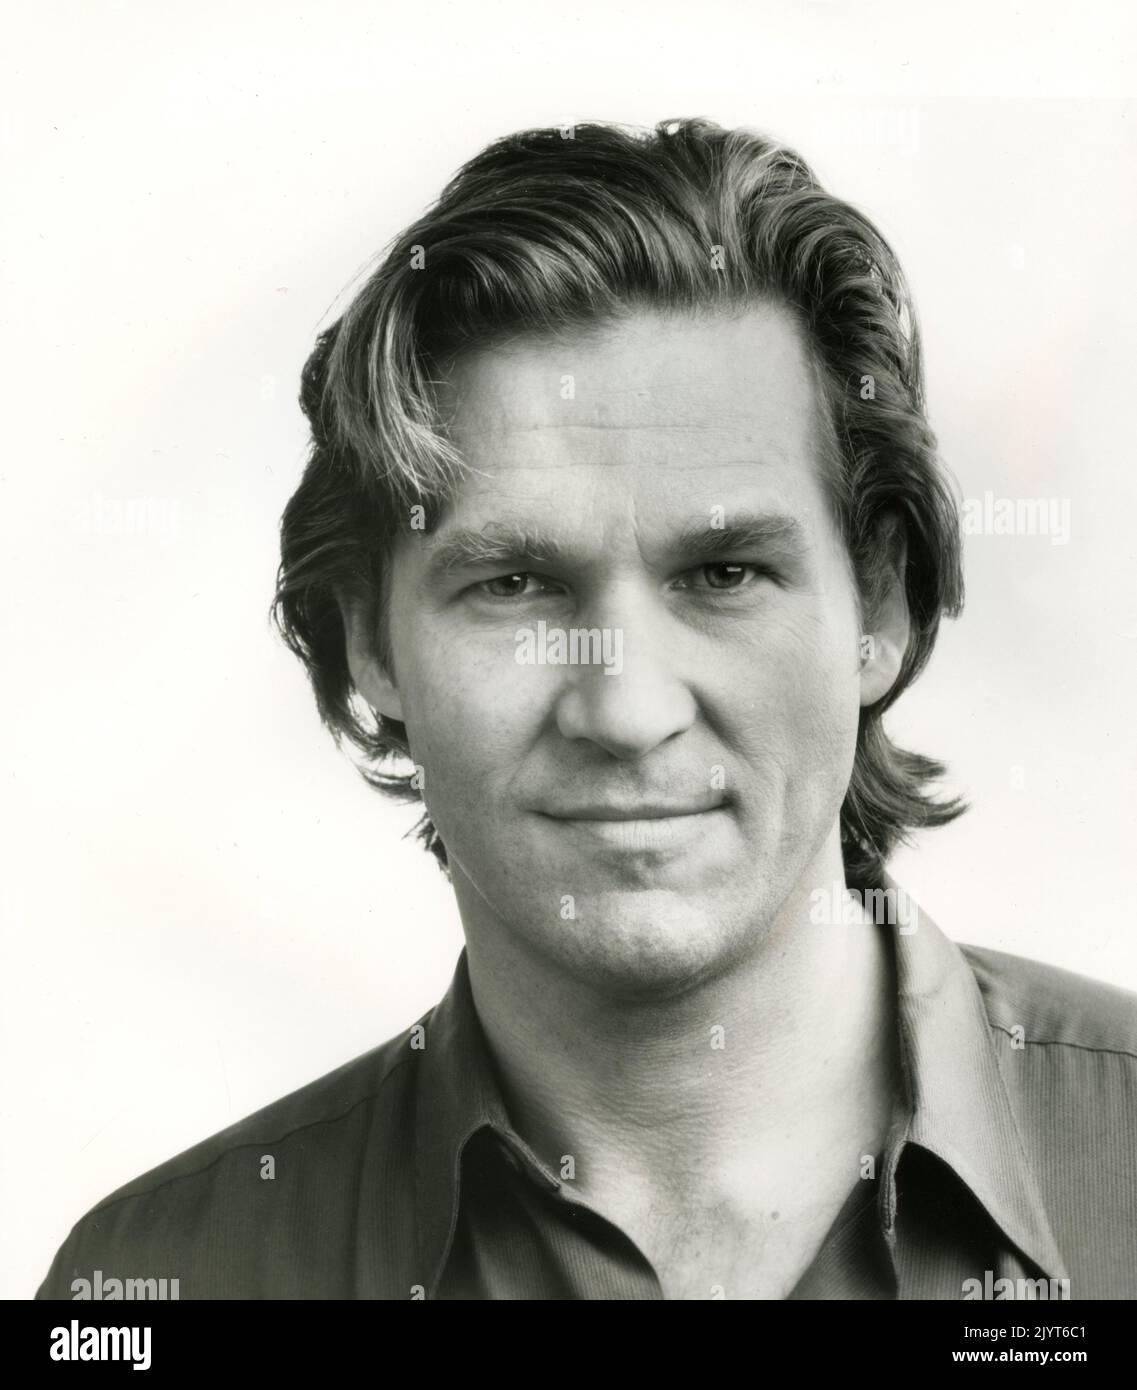 El actor estadounidense Jeff Bridges en la película Fearless, USA 1993 Foto de stock